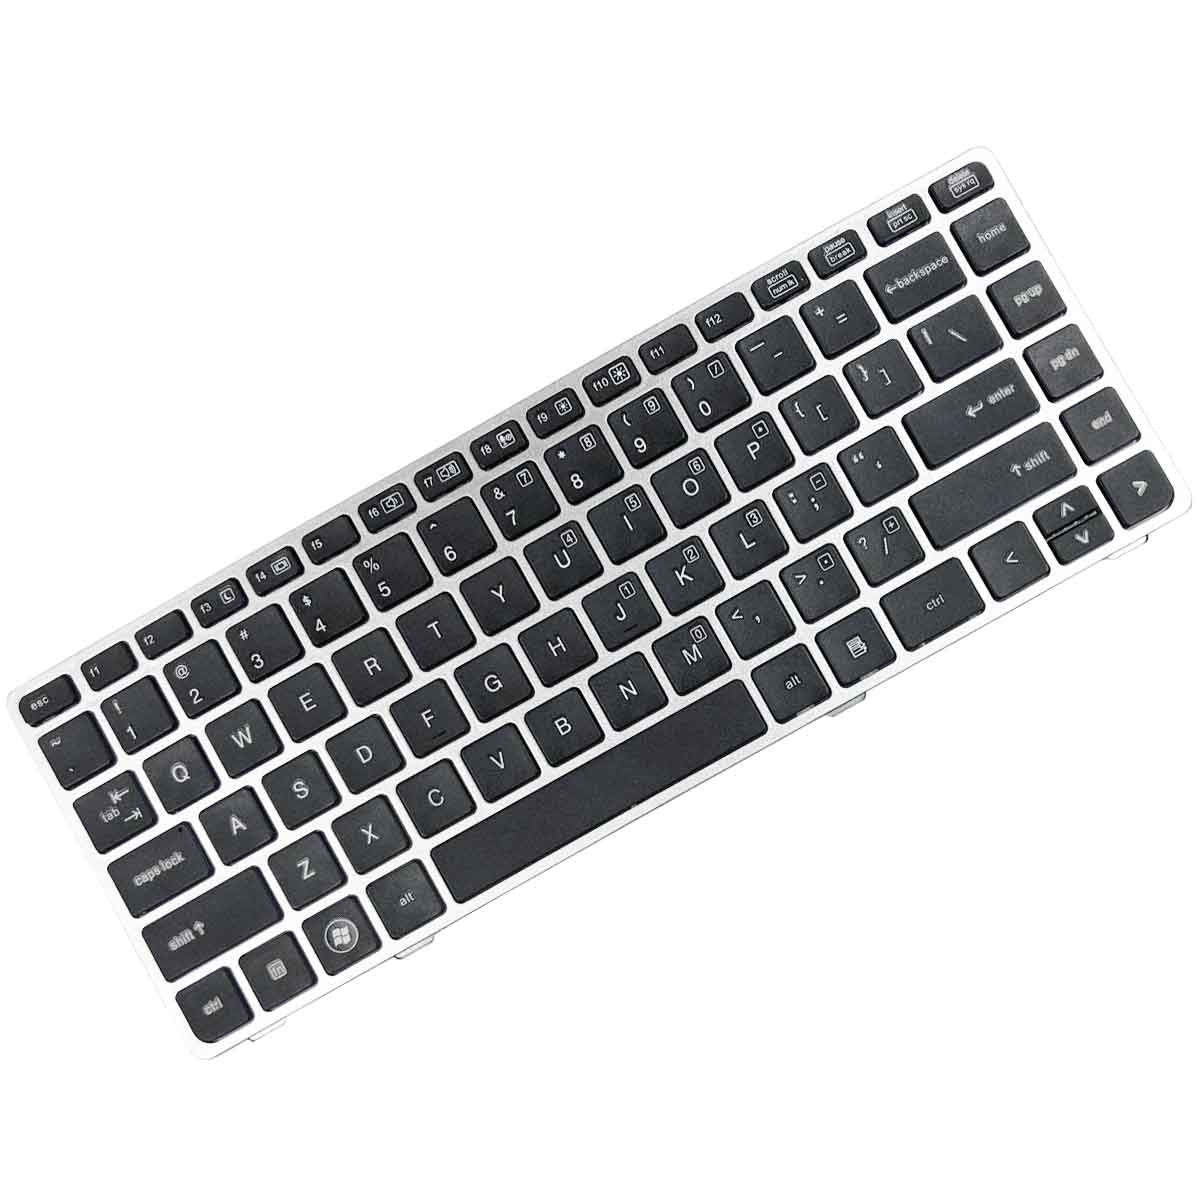 کیبورد لپ تاپ اچ پی Keyboard Laptop Hp 8450 8460 8470P 8470W